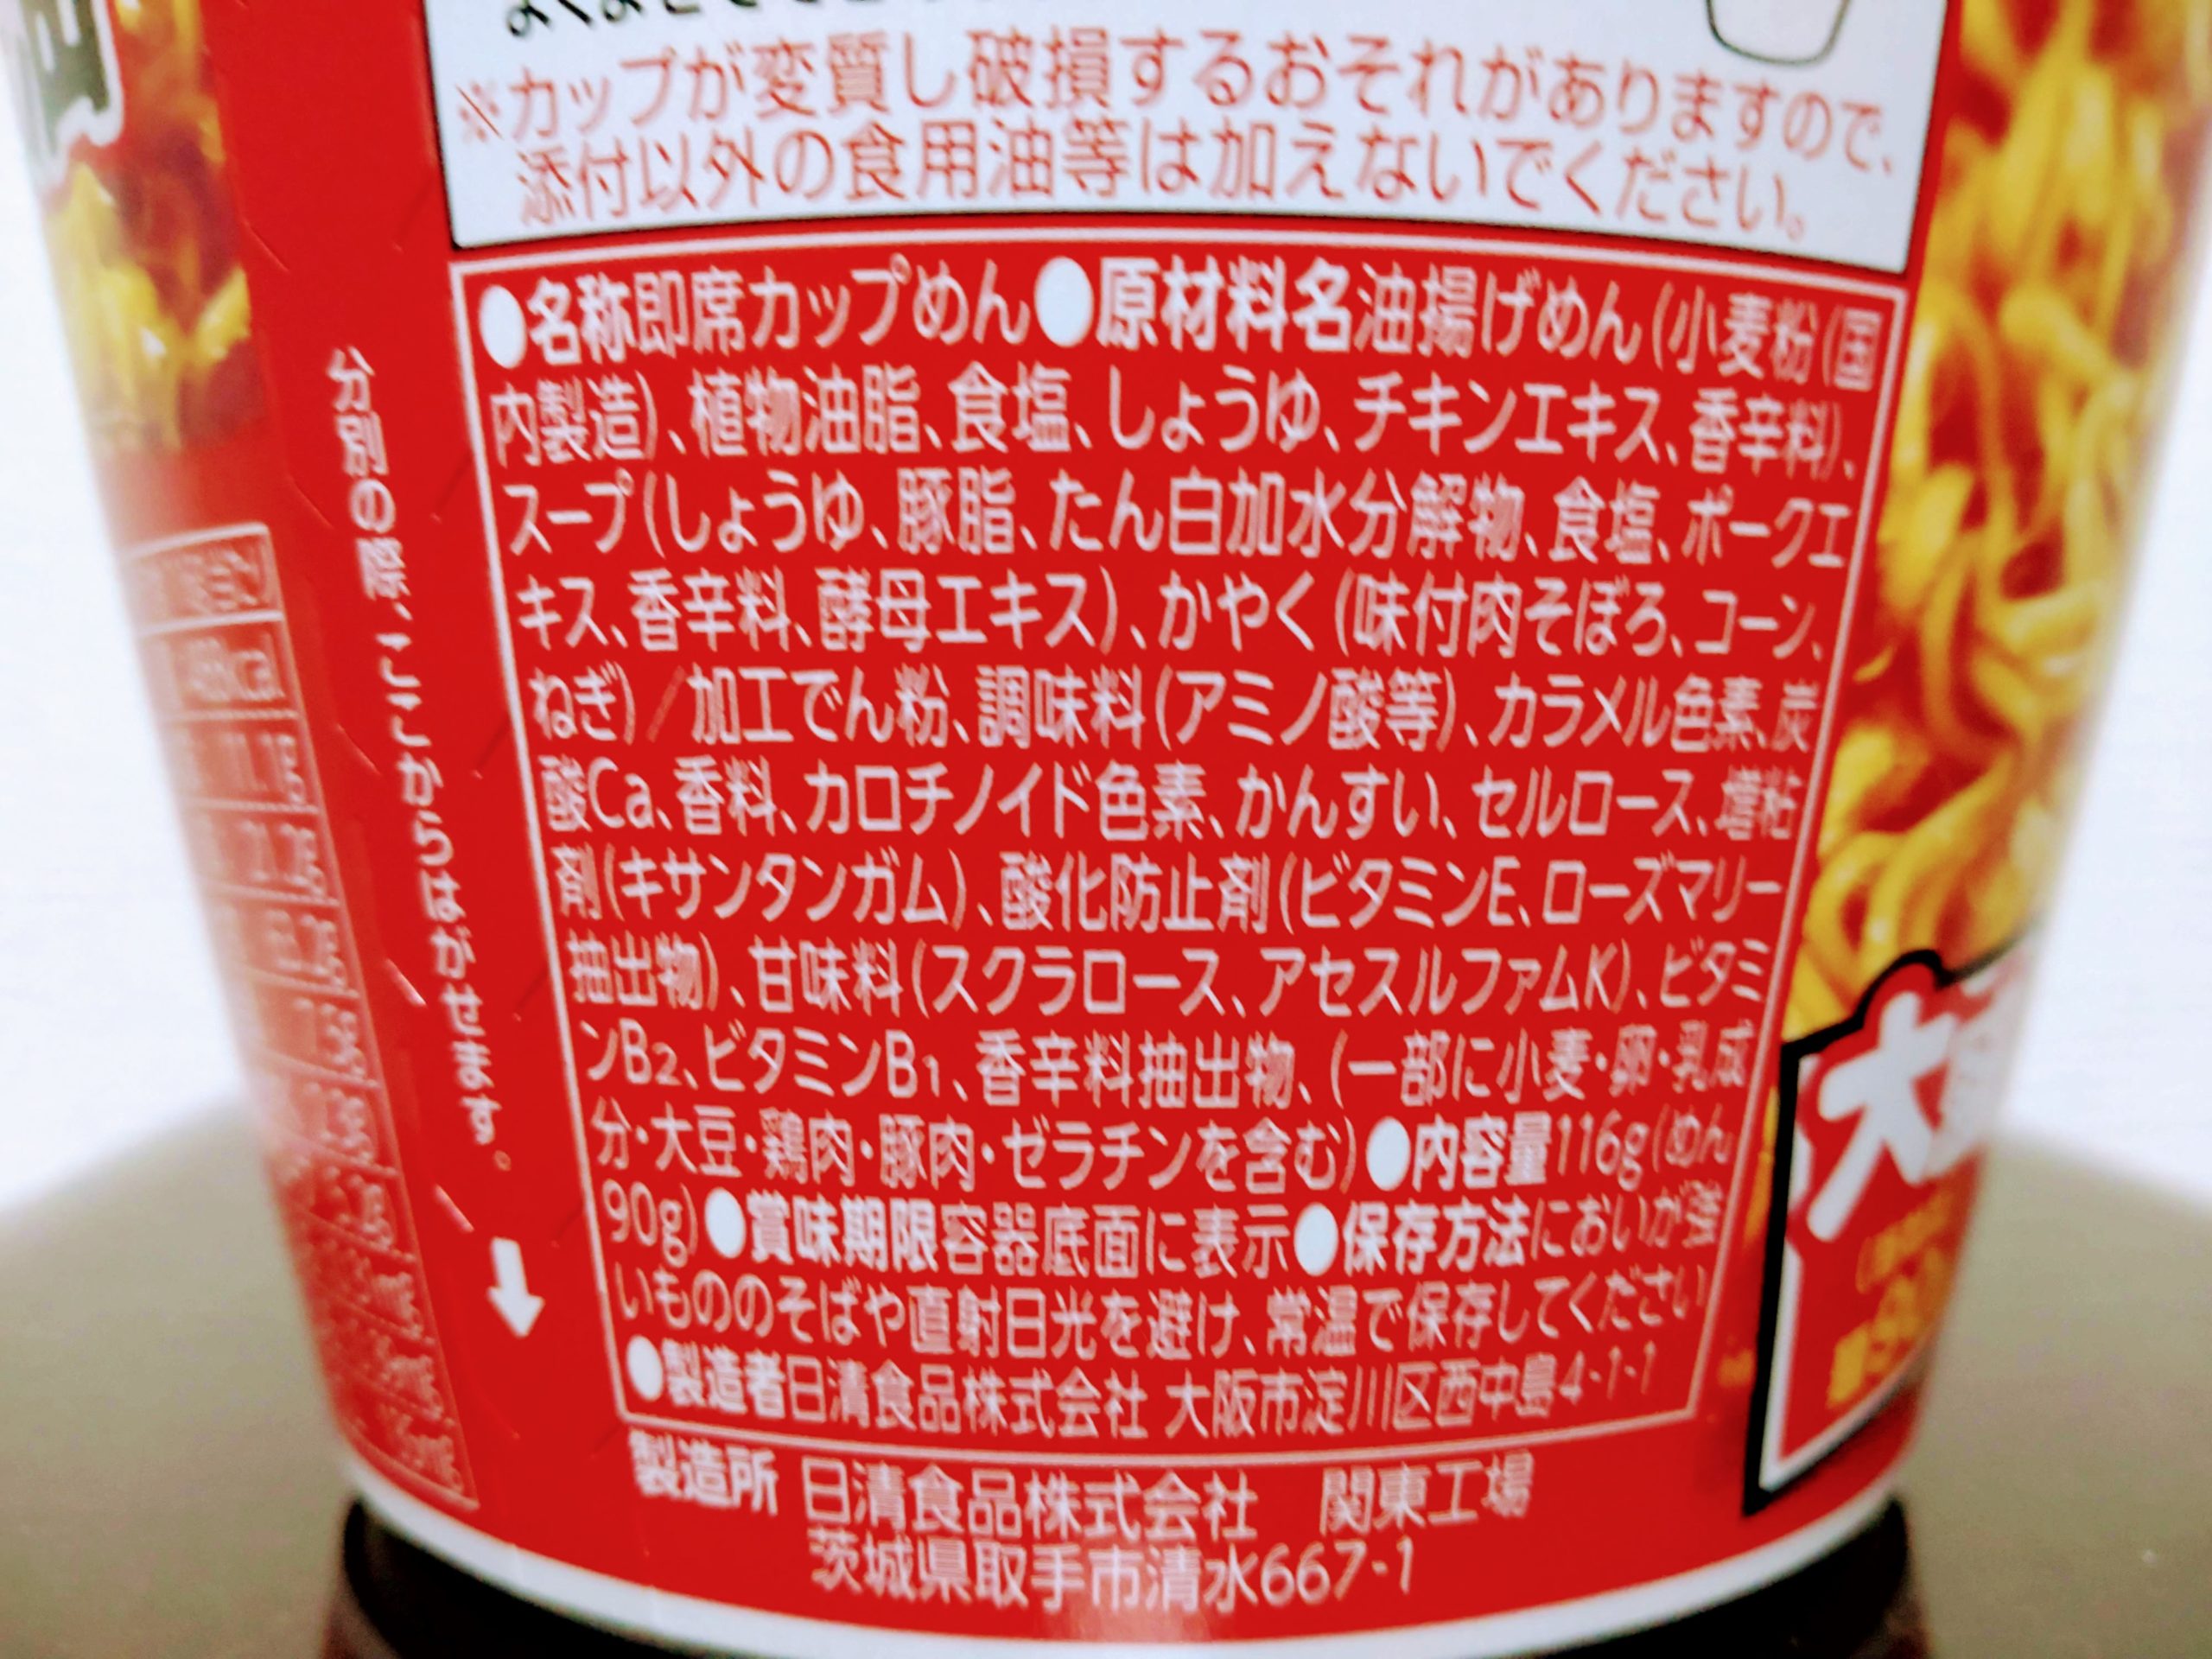 日清デカうま 濃厚コク旨醤油の食品表示